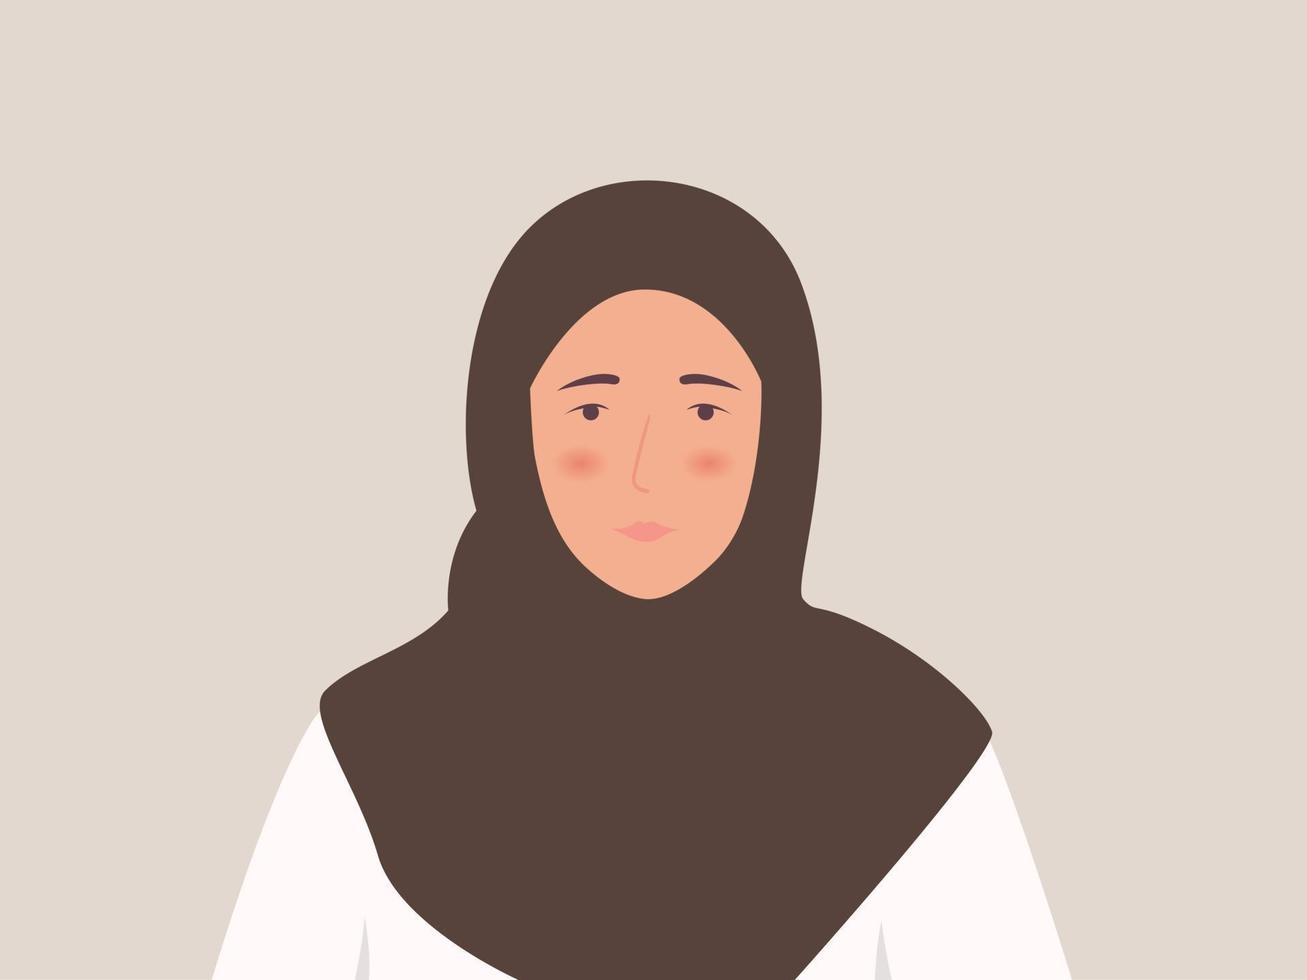 jonge moslimvrouw in traditionele islamitische kleding vector